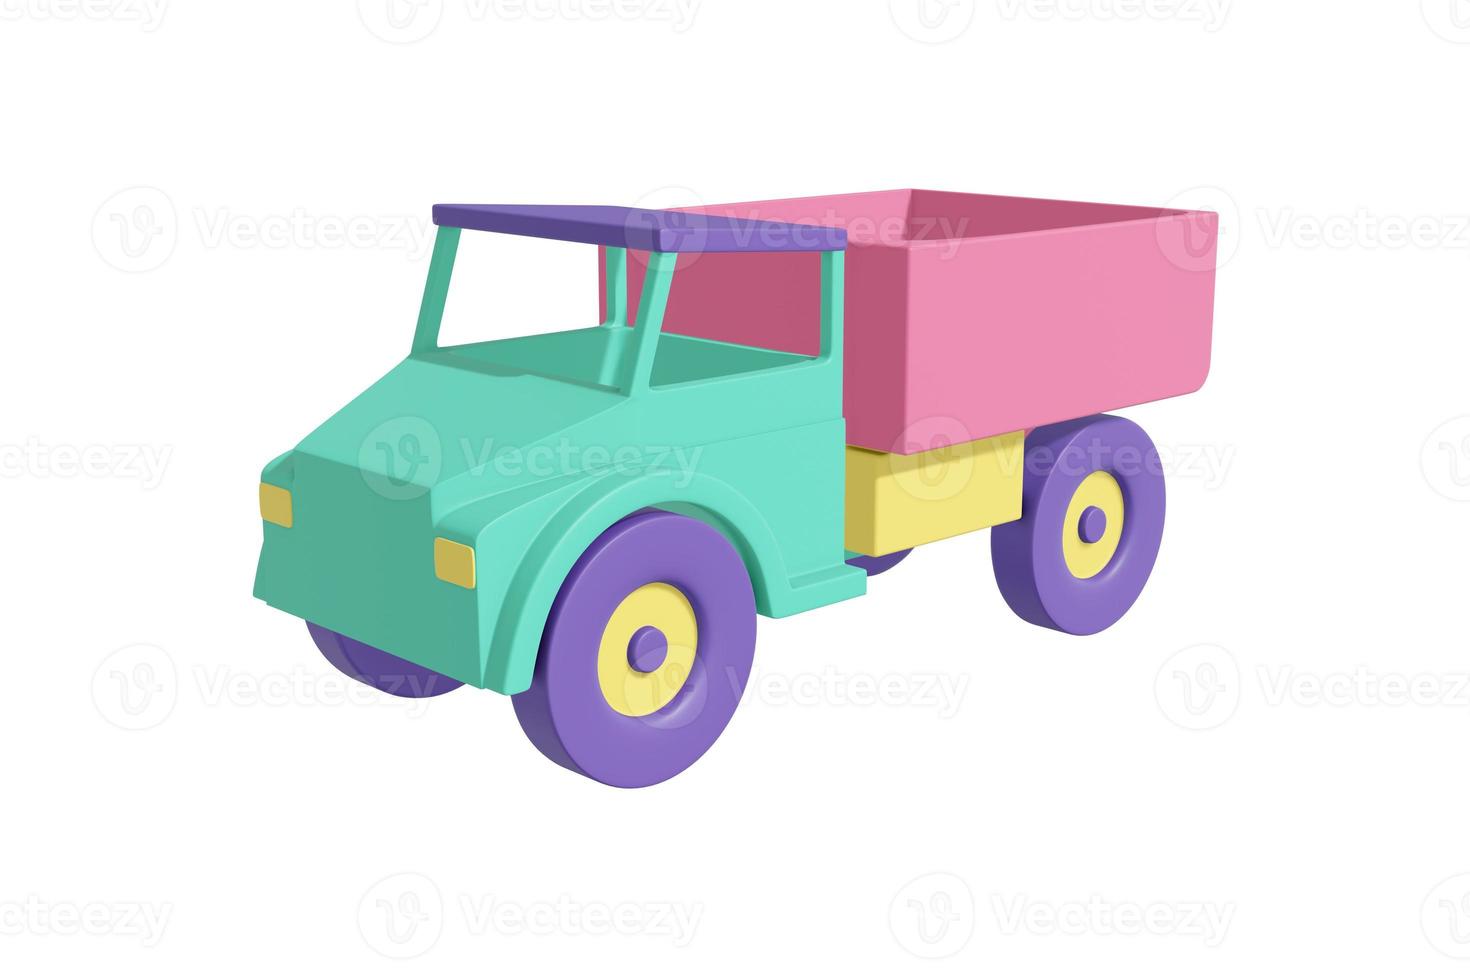 coche de camión con un diseño realista de estilo de dibujos animados de cuerpo en color verde pastel, coral, amarillo, púrpura. niños juguete fondo blanco aislado. concepto de transporte minimalista. representación 3d foto